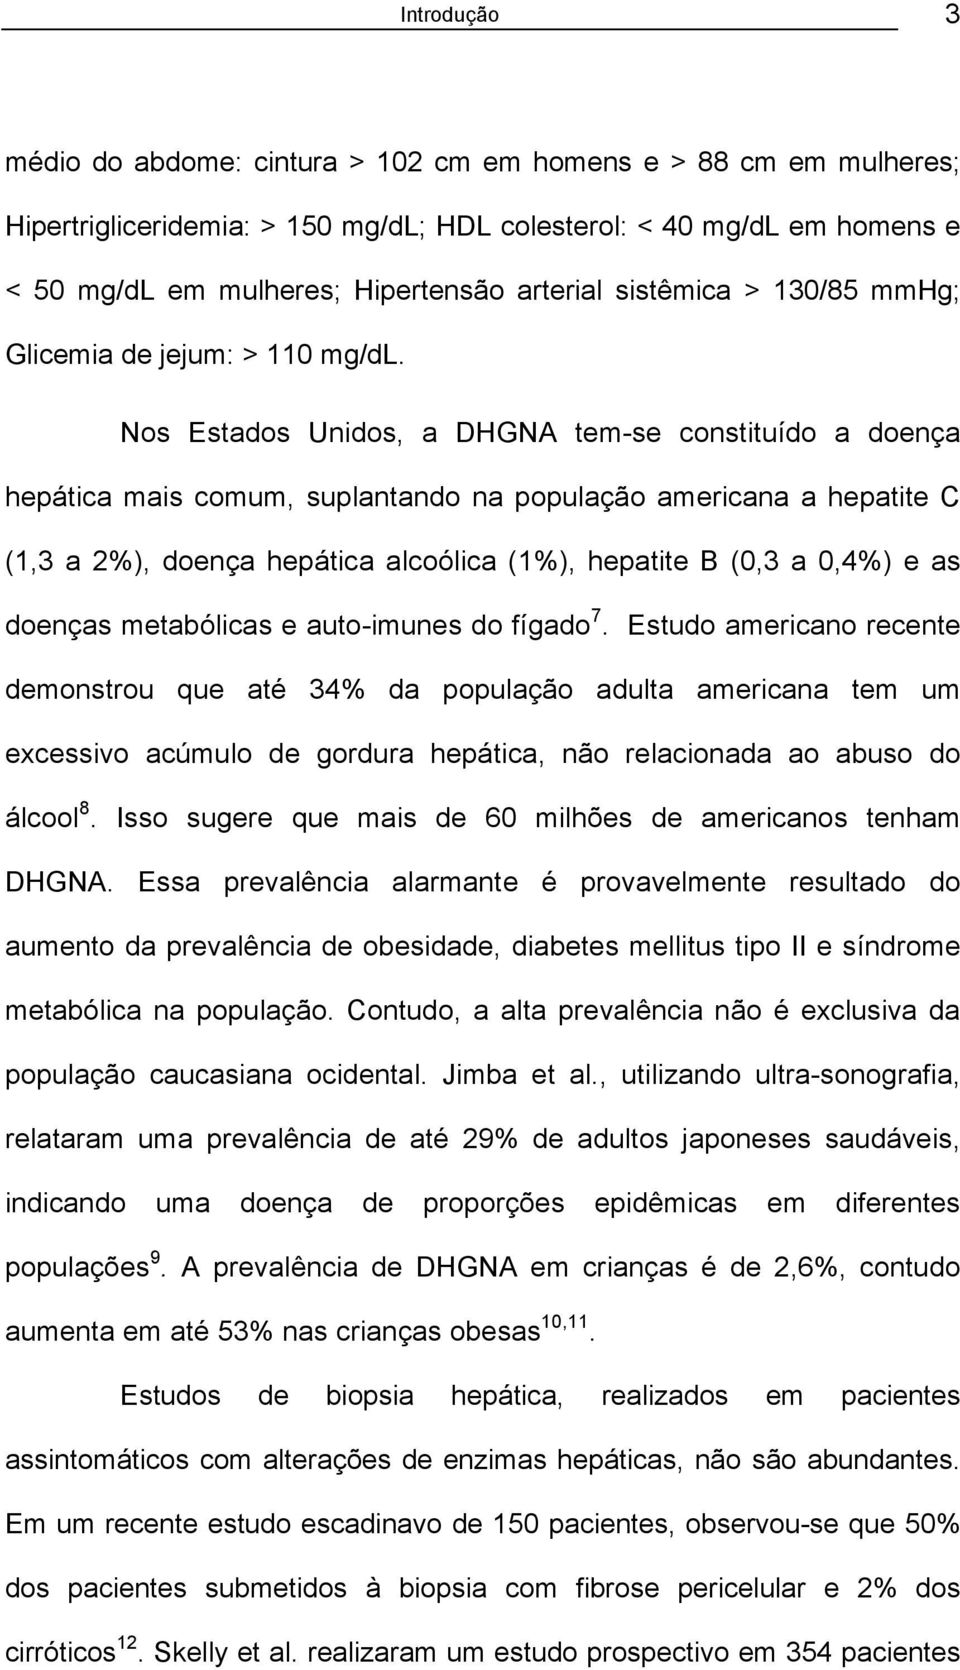 Nos Estados Unidos, a DHGNA tem-se constituído a doença hepática mais comum, suplantando na população americana a hepatite C (1,3 a 2%), doença hepática alcoólica (1%), hepatite B (0,3 a 0,4%) e as